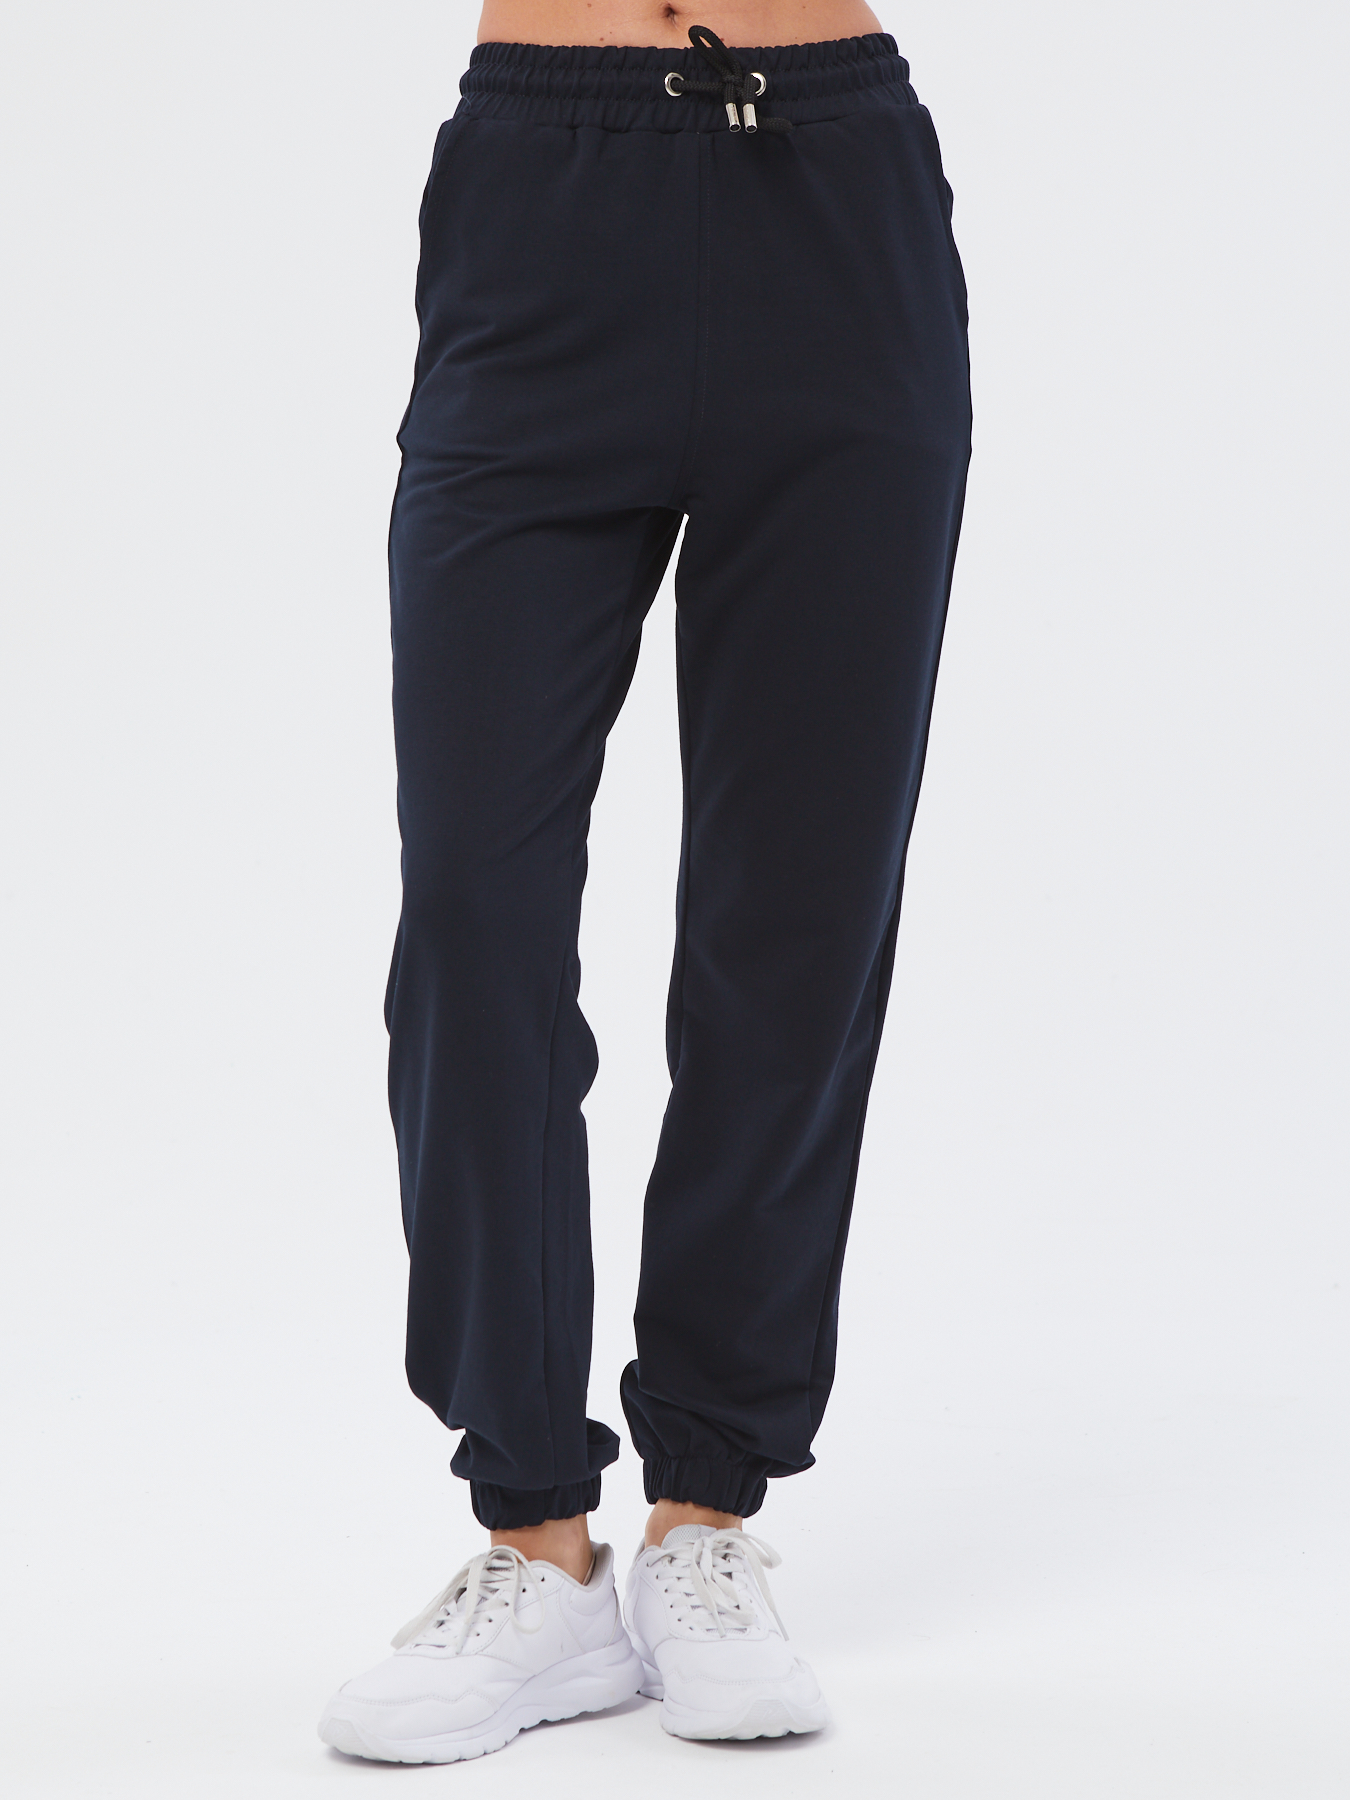 Спортивные брюки женские Still-expert б5 синие 46/150-165